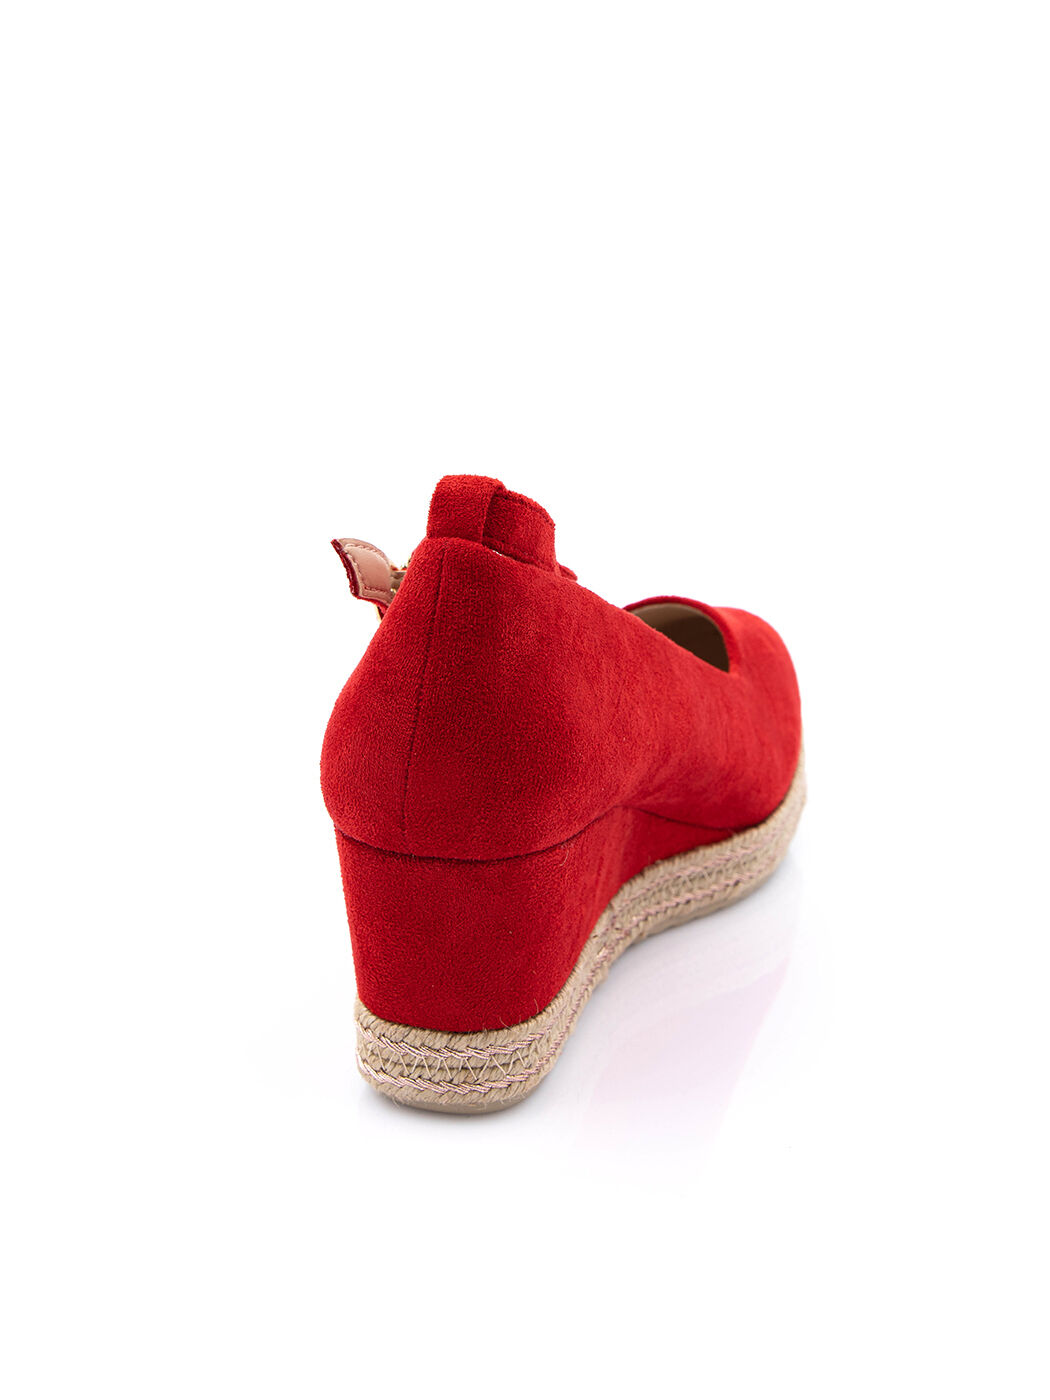 Туфли женские красные экозамша каблук устойчивый демисезон от производителя 4M вид 1